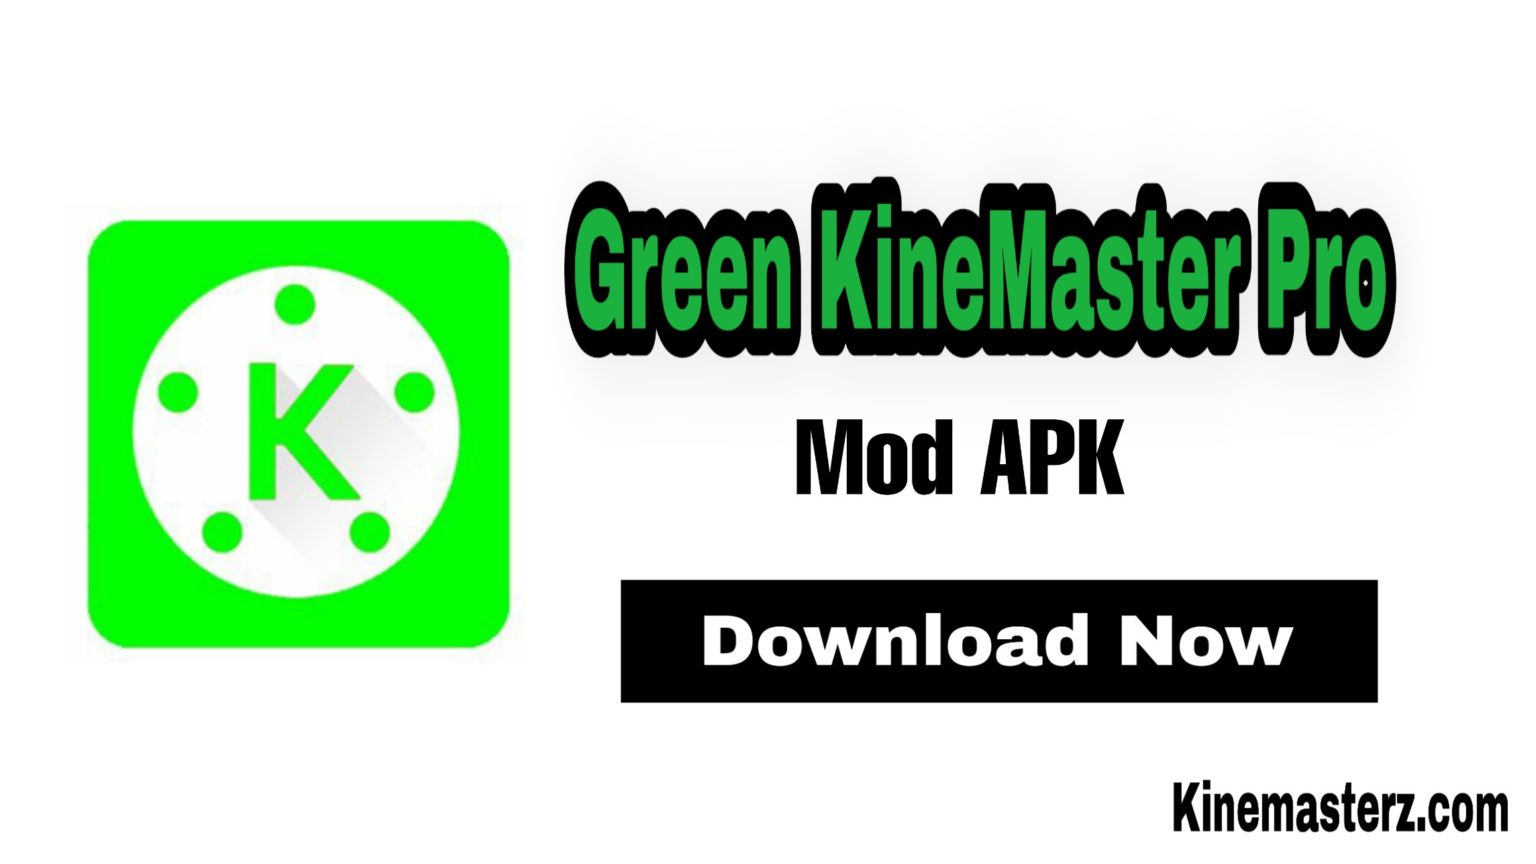 green kinemaster pro app